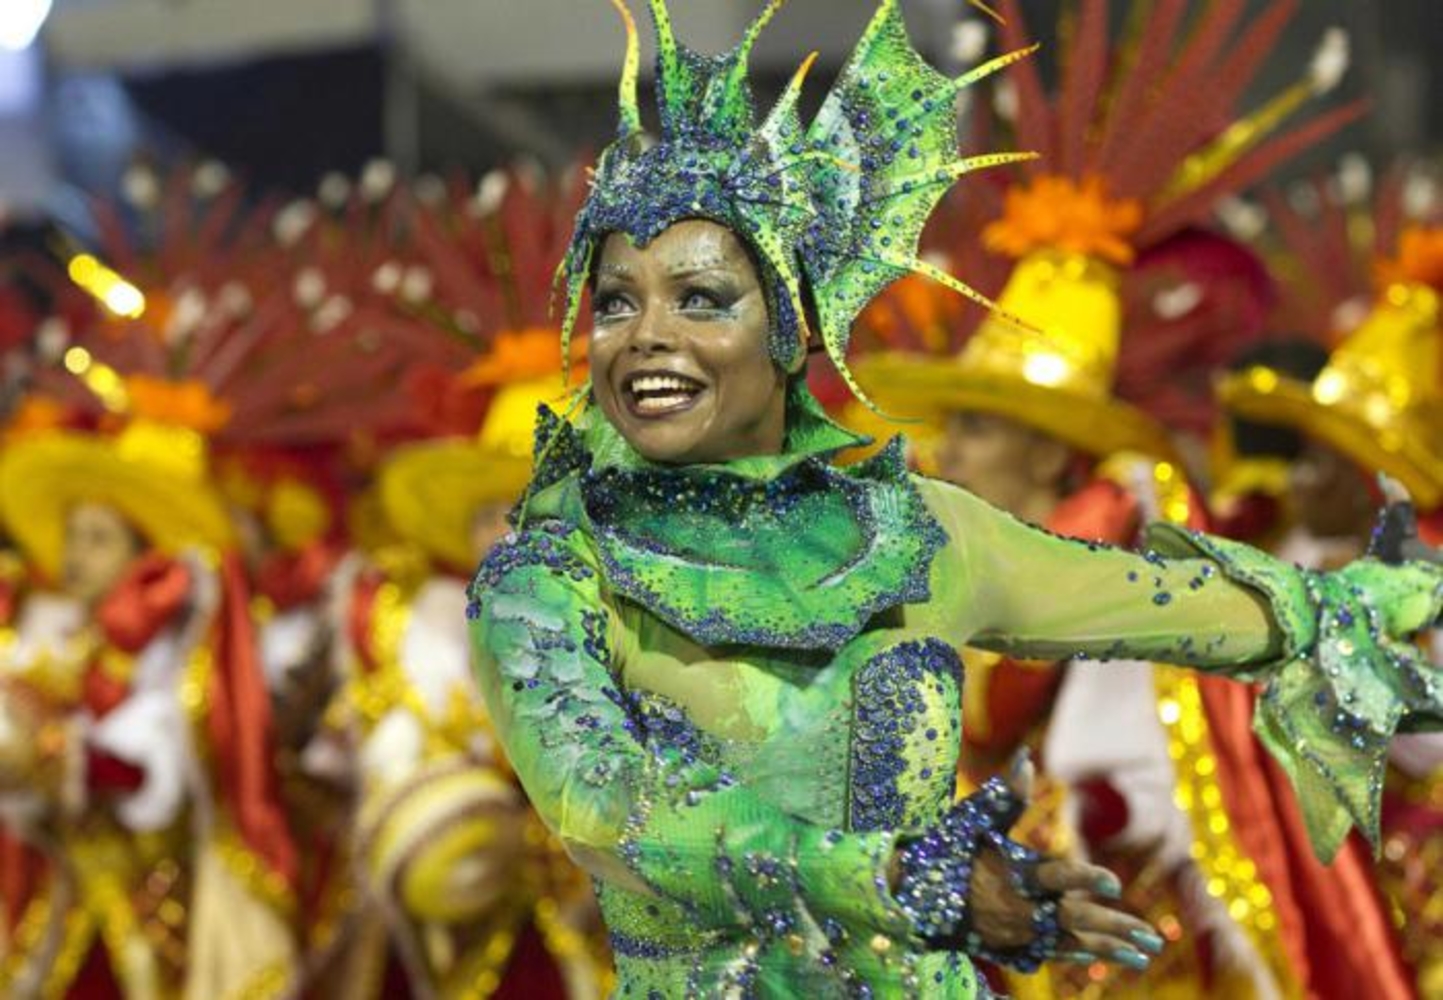 Одевали карнавал. Карнавал в Бразилии. Рио-де-Жанейро карнавал костюмы дети. Маскарад в Рио де Жанейро. Карнавал бразильский карнавал.